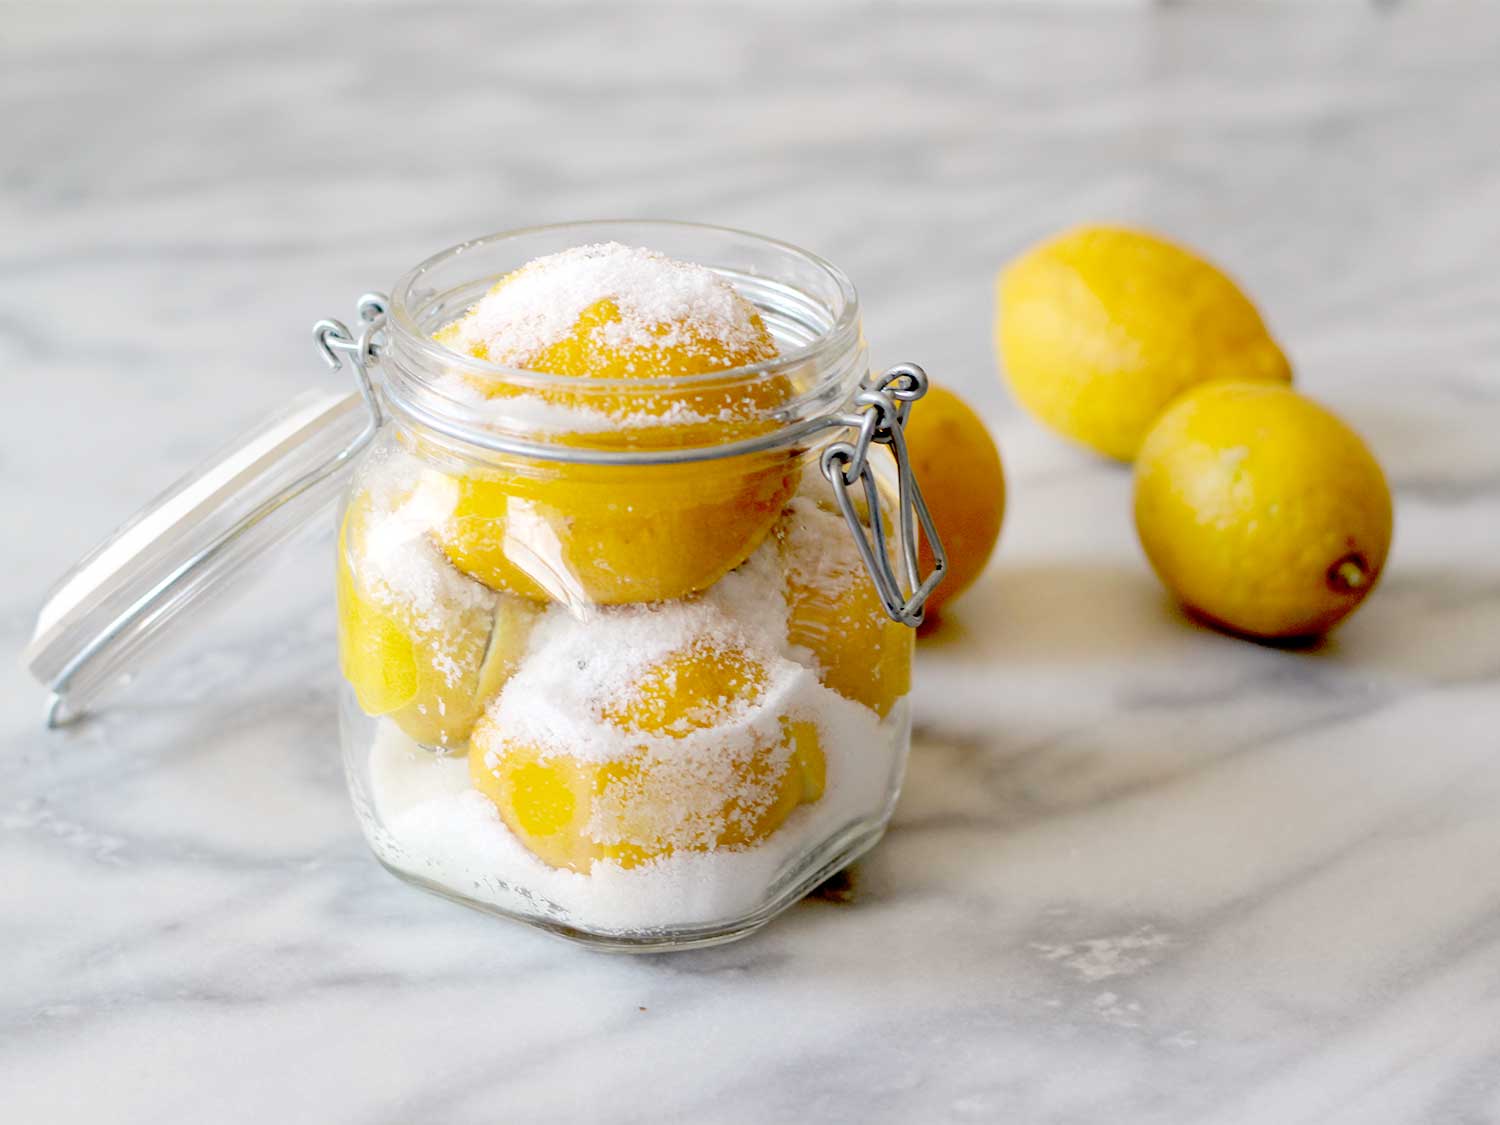 Memakai pasta lemon dan garam - 10 Cara Mujarab Menghilangkan Gigi Kuning